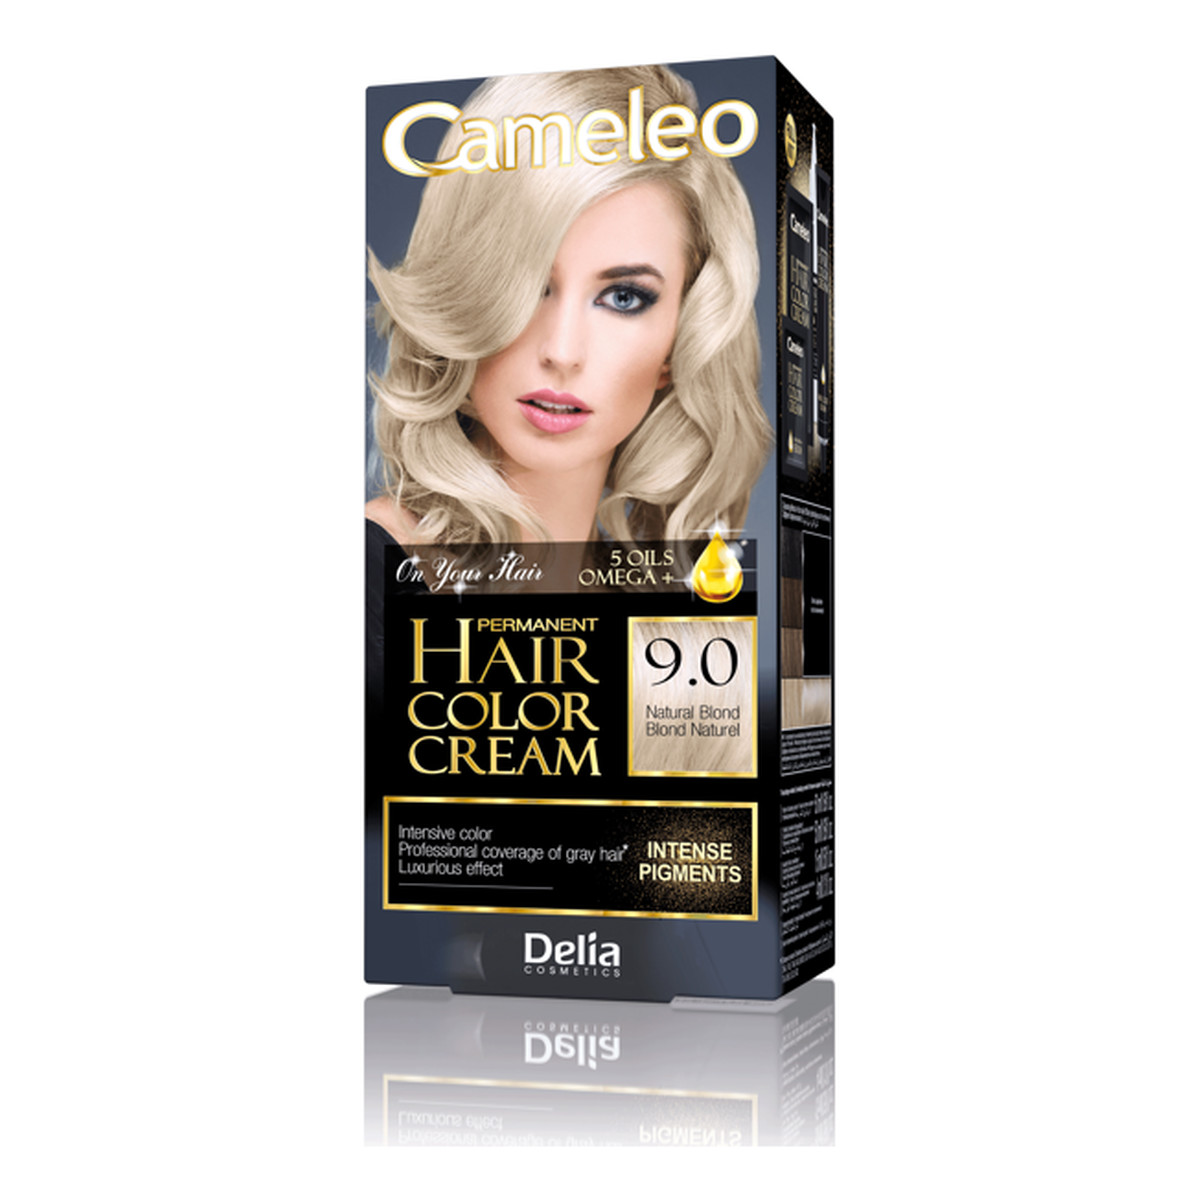 Cameleo HCC Farba permanentna Omega+ Natural Blond (9.0)